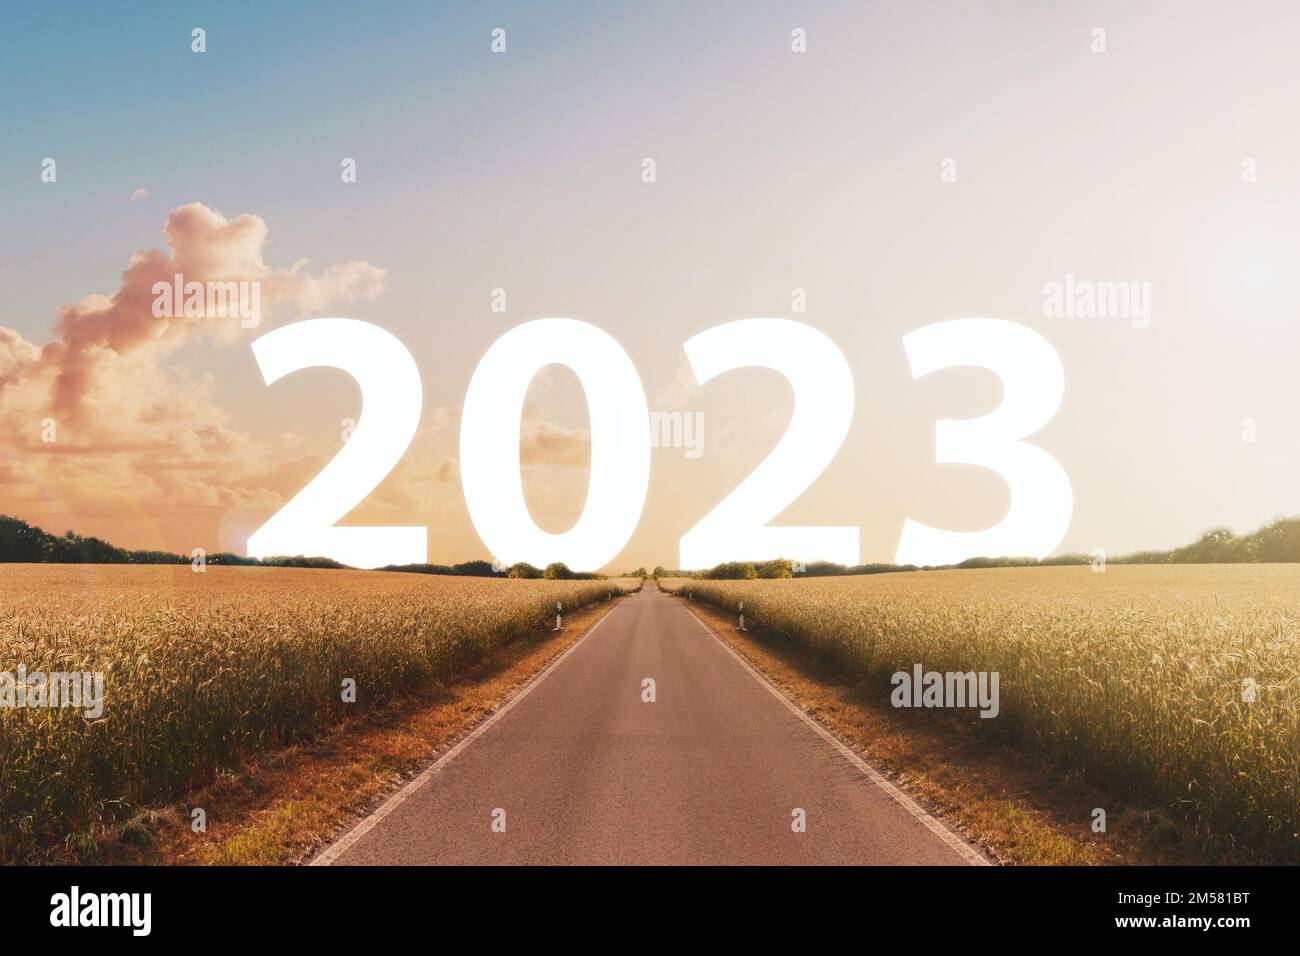 Bonne année 2023 concept - route ou autoroute avec texte Banque D'Images